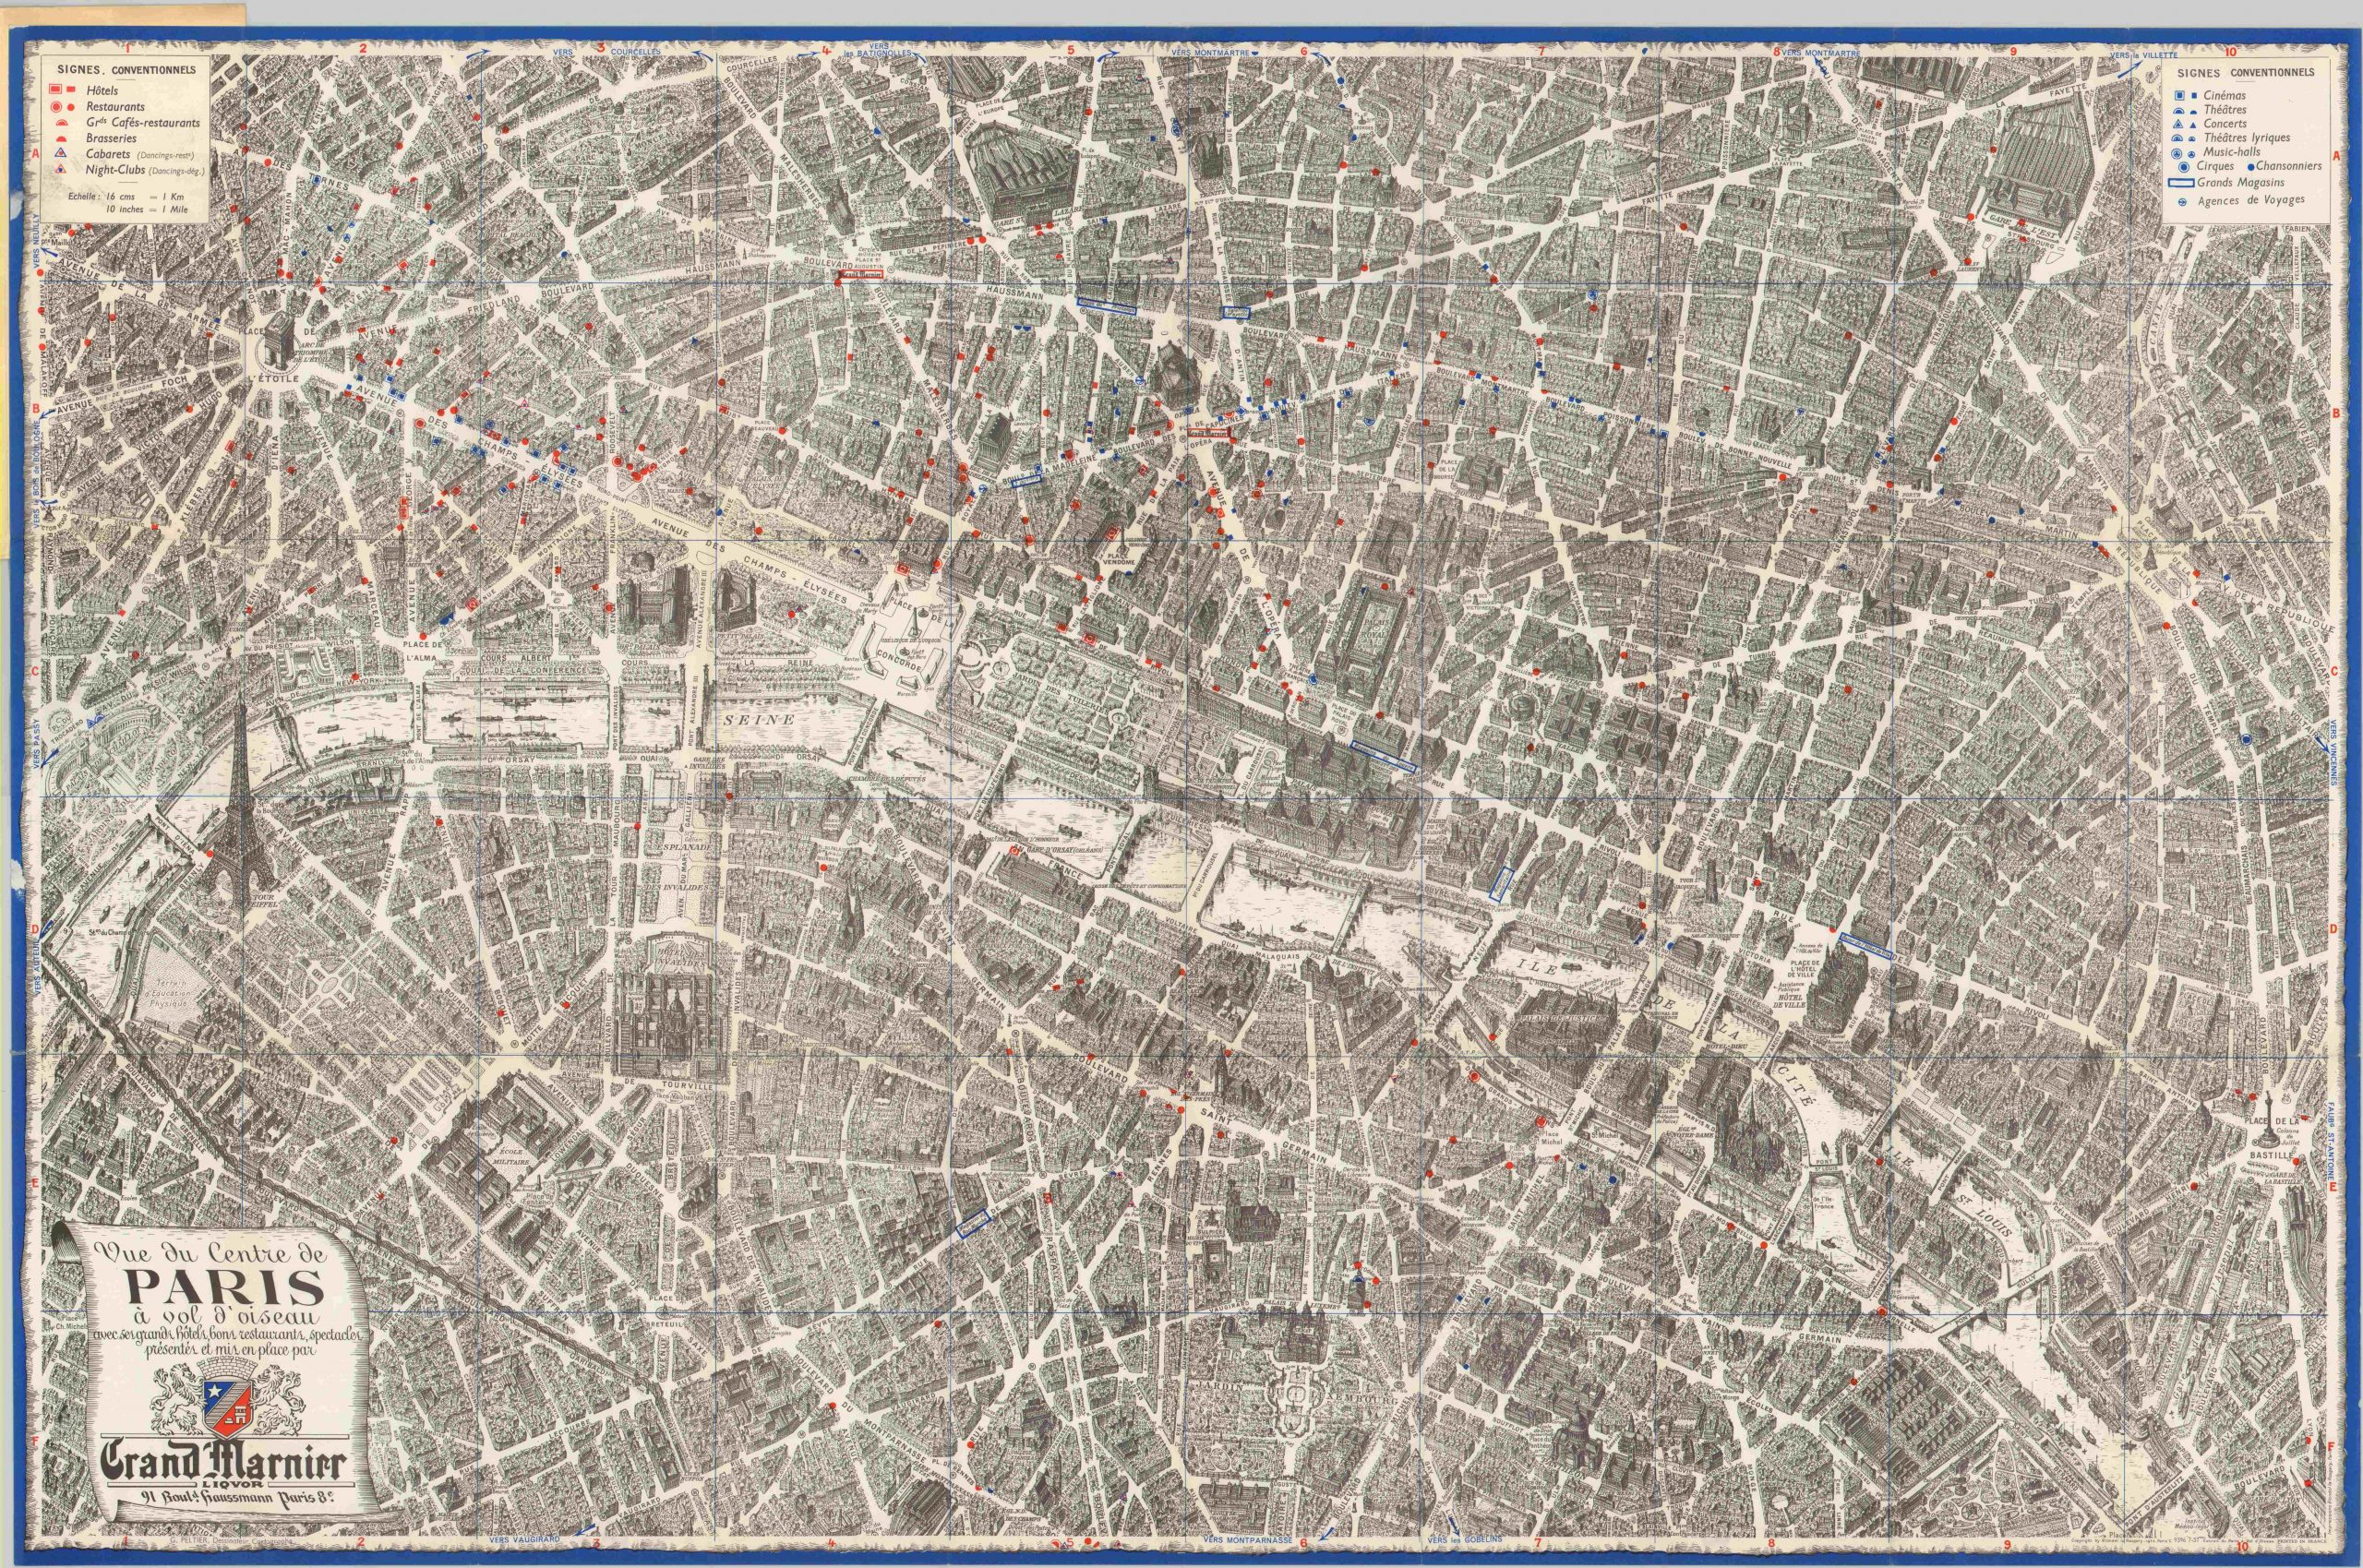 Vue du Centre de Paris | Curtis Wright Maps